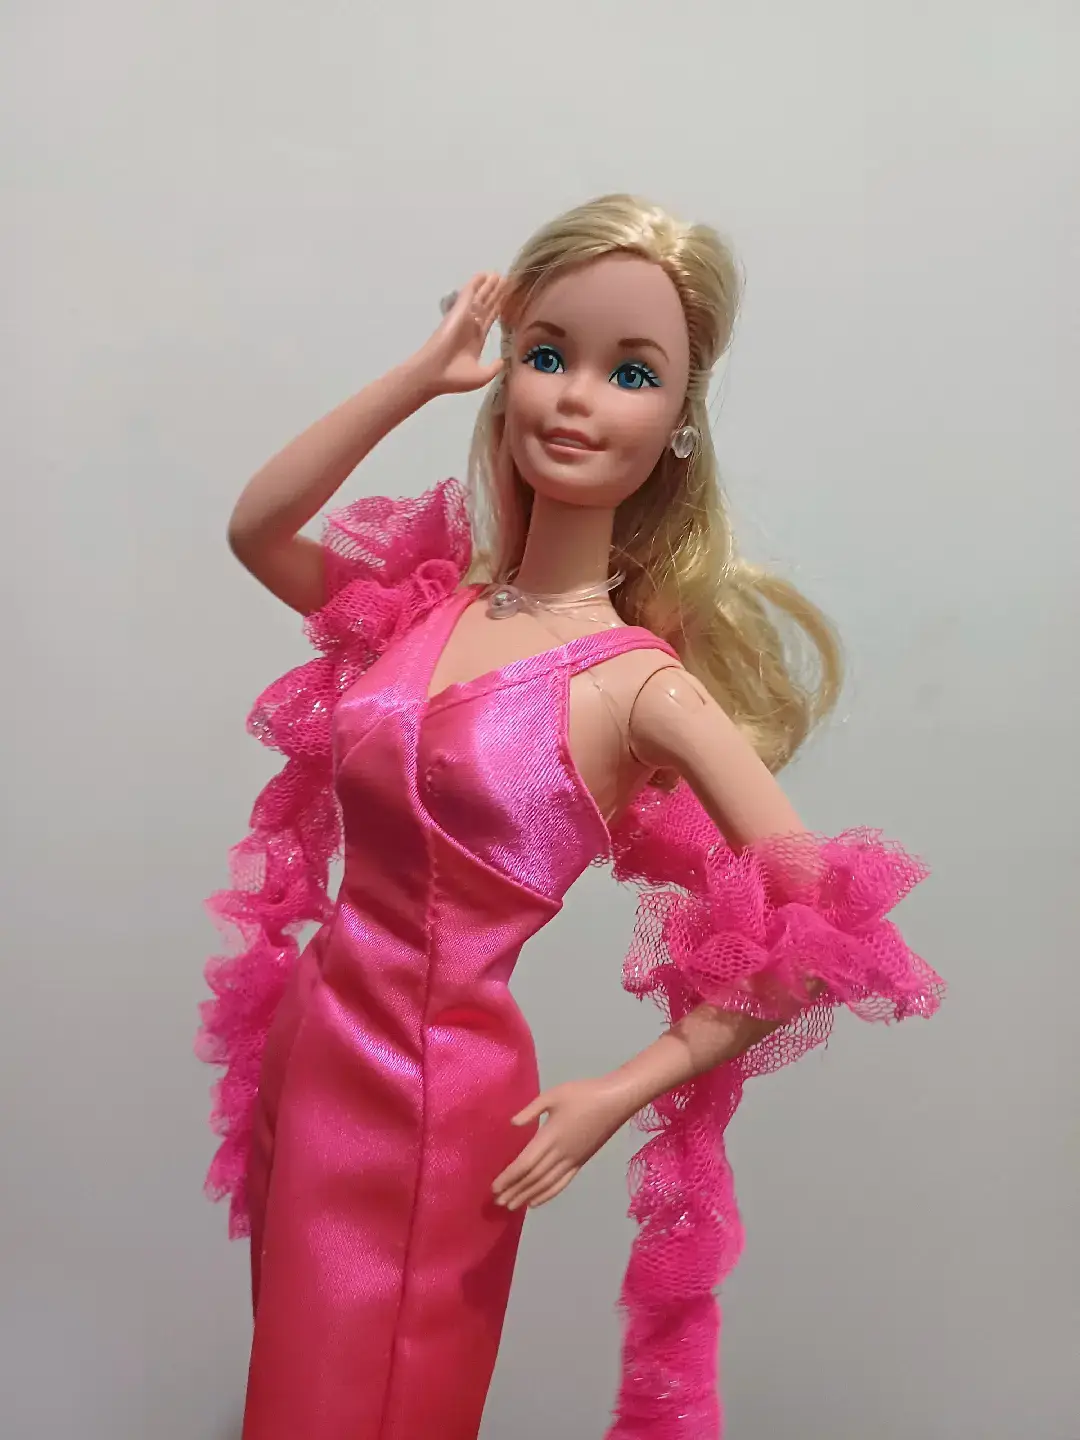 Esta reproducción es hermosa Esta Barbie es icónica Que otra Barbie retro les gusta?  #barbie #barbiephoto #barbiecollector #doll #dollcollector #vintage #nostalgic #mattel #barbiesuperstar #pink #barbiegram #barbiedoll #barbiesuperstar1977 